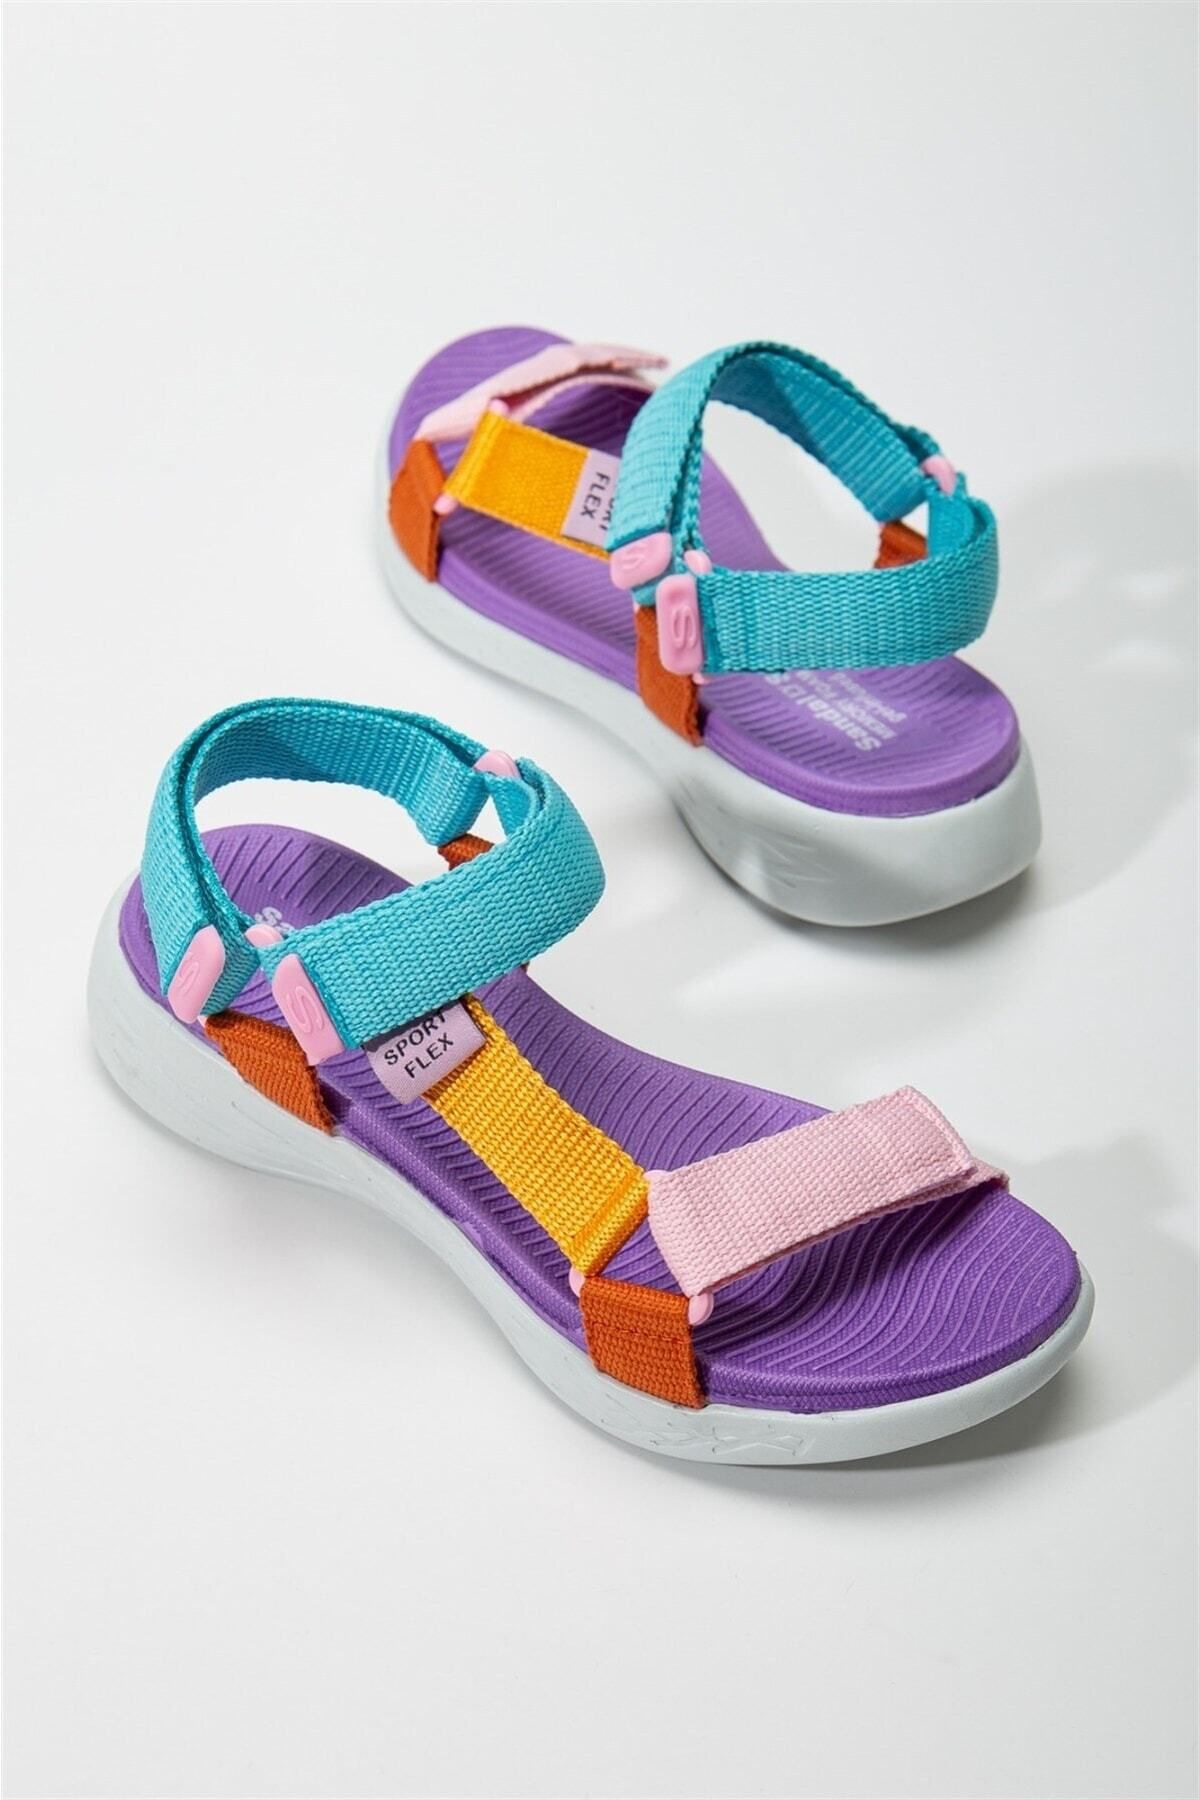 Bak Store Mor Multi Renkli Cırtlı Kadın Spor Sandalet